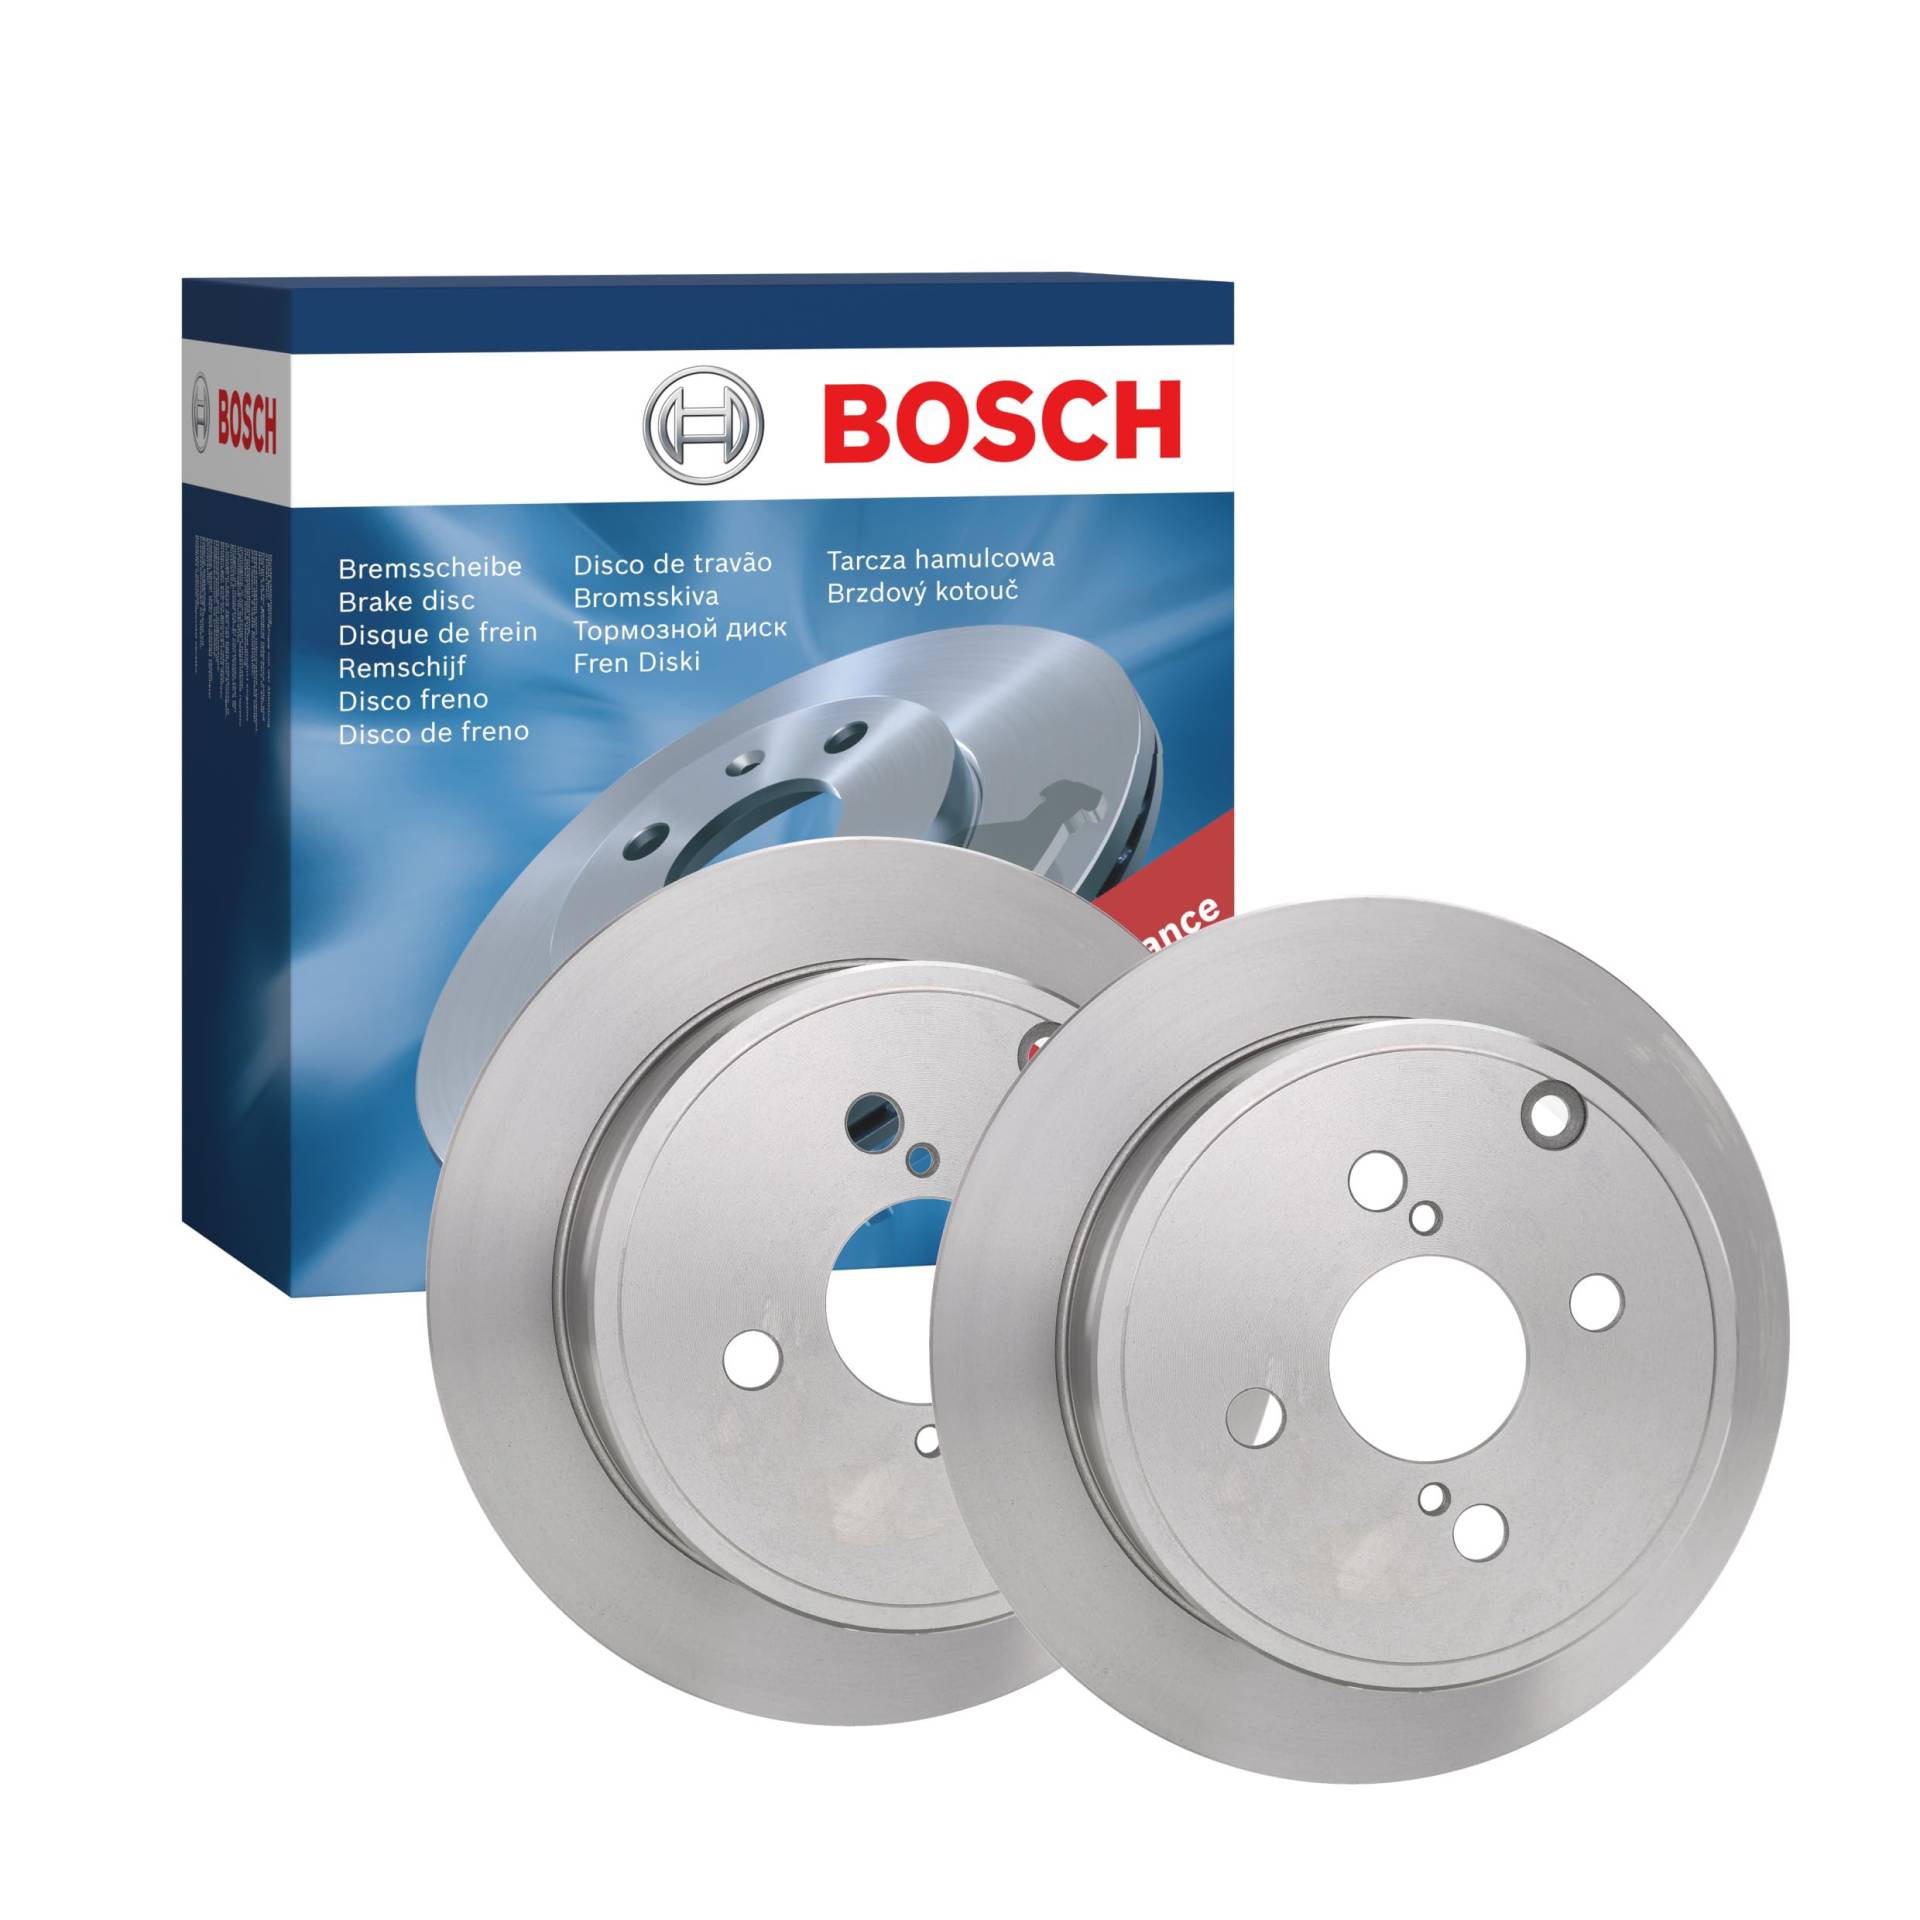 Bosch BD1021 Bremsscheiben - Hinterachse - ECE-R90 Zertifizierung - zwei Bremsscheiben pro Set von Bosch Automotive